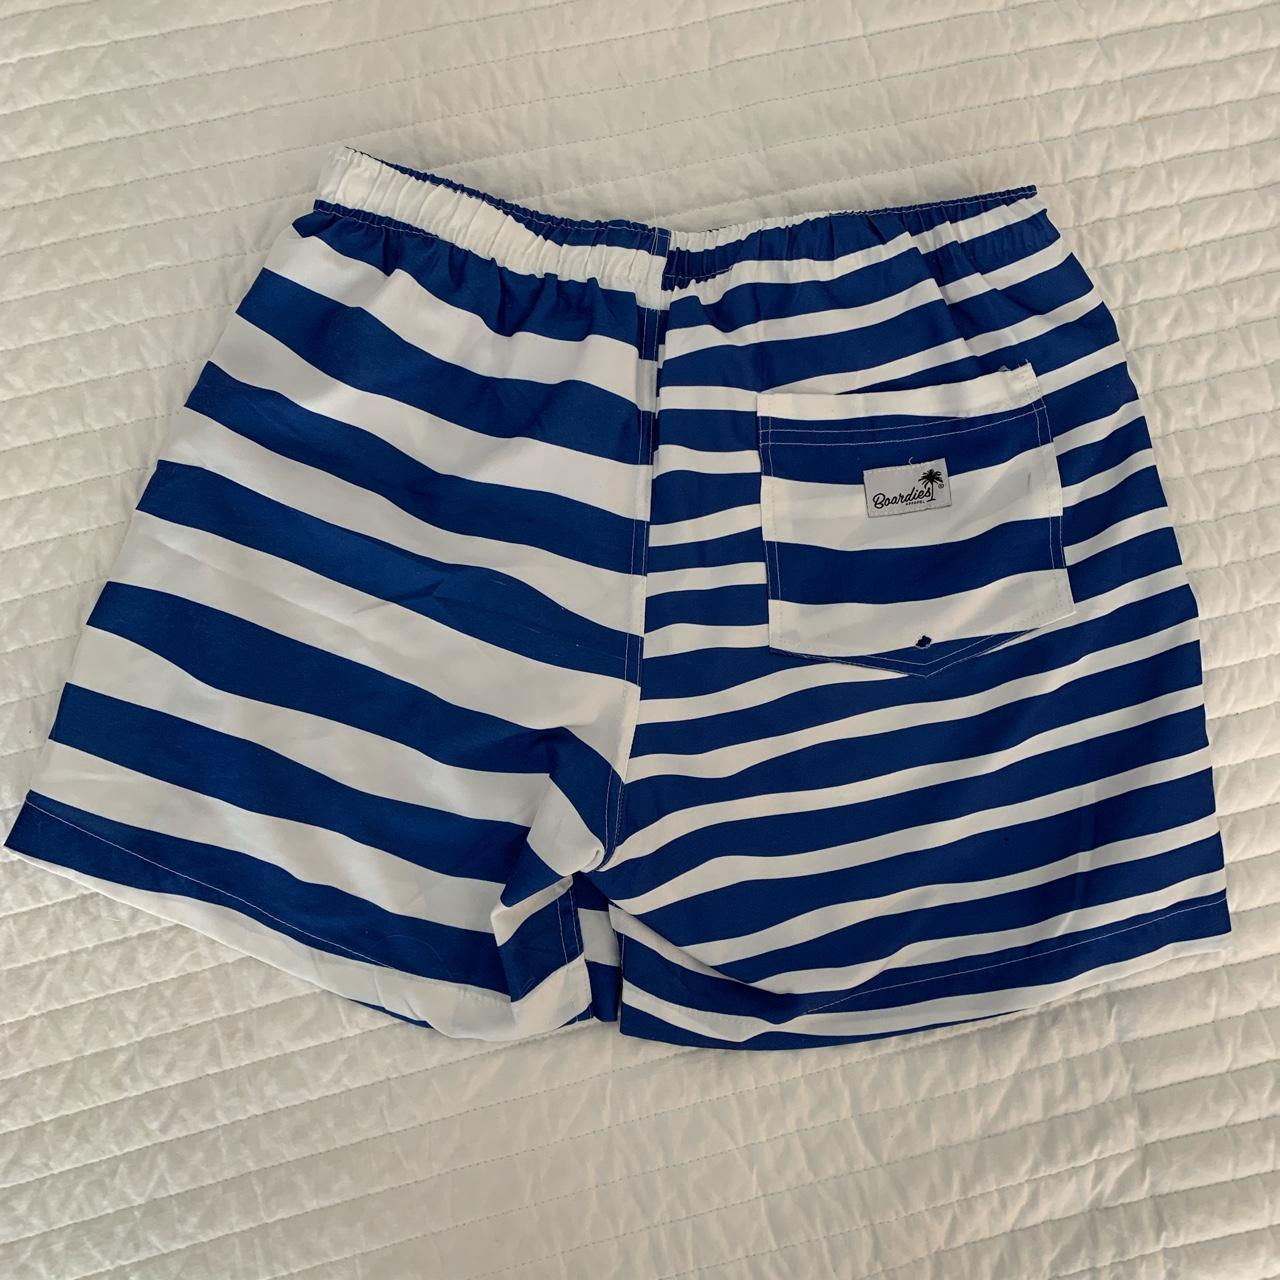 Men's Blue and White Swim-briefs-shorts (2)